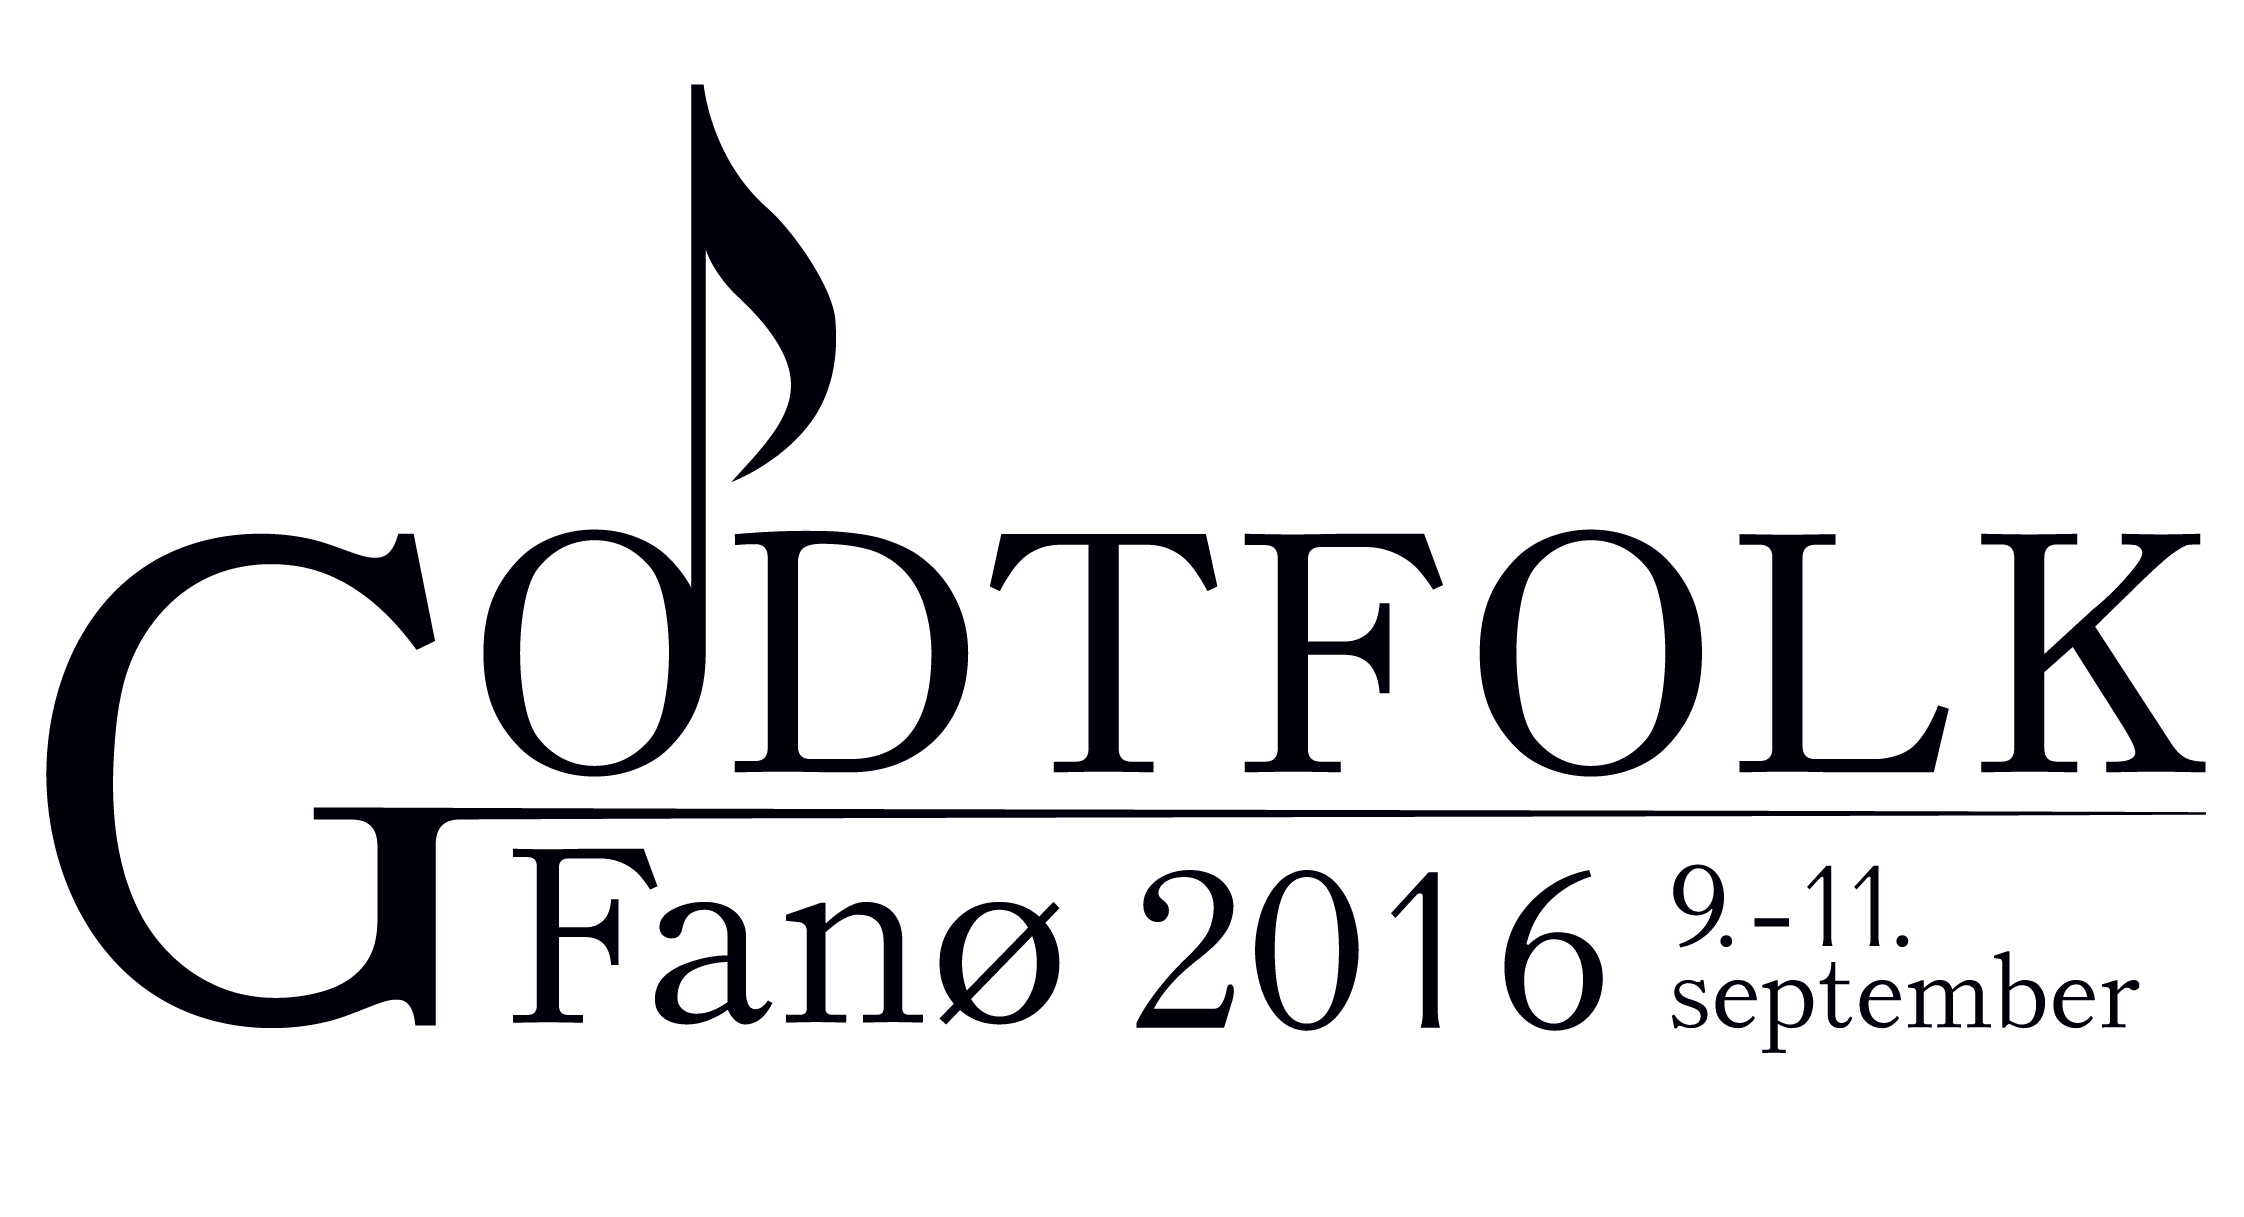 Godtfolk Festival logo sort